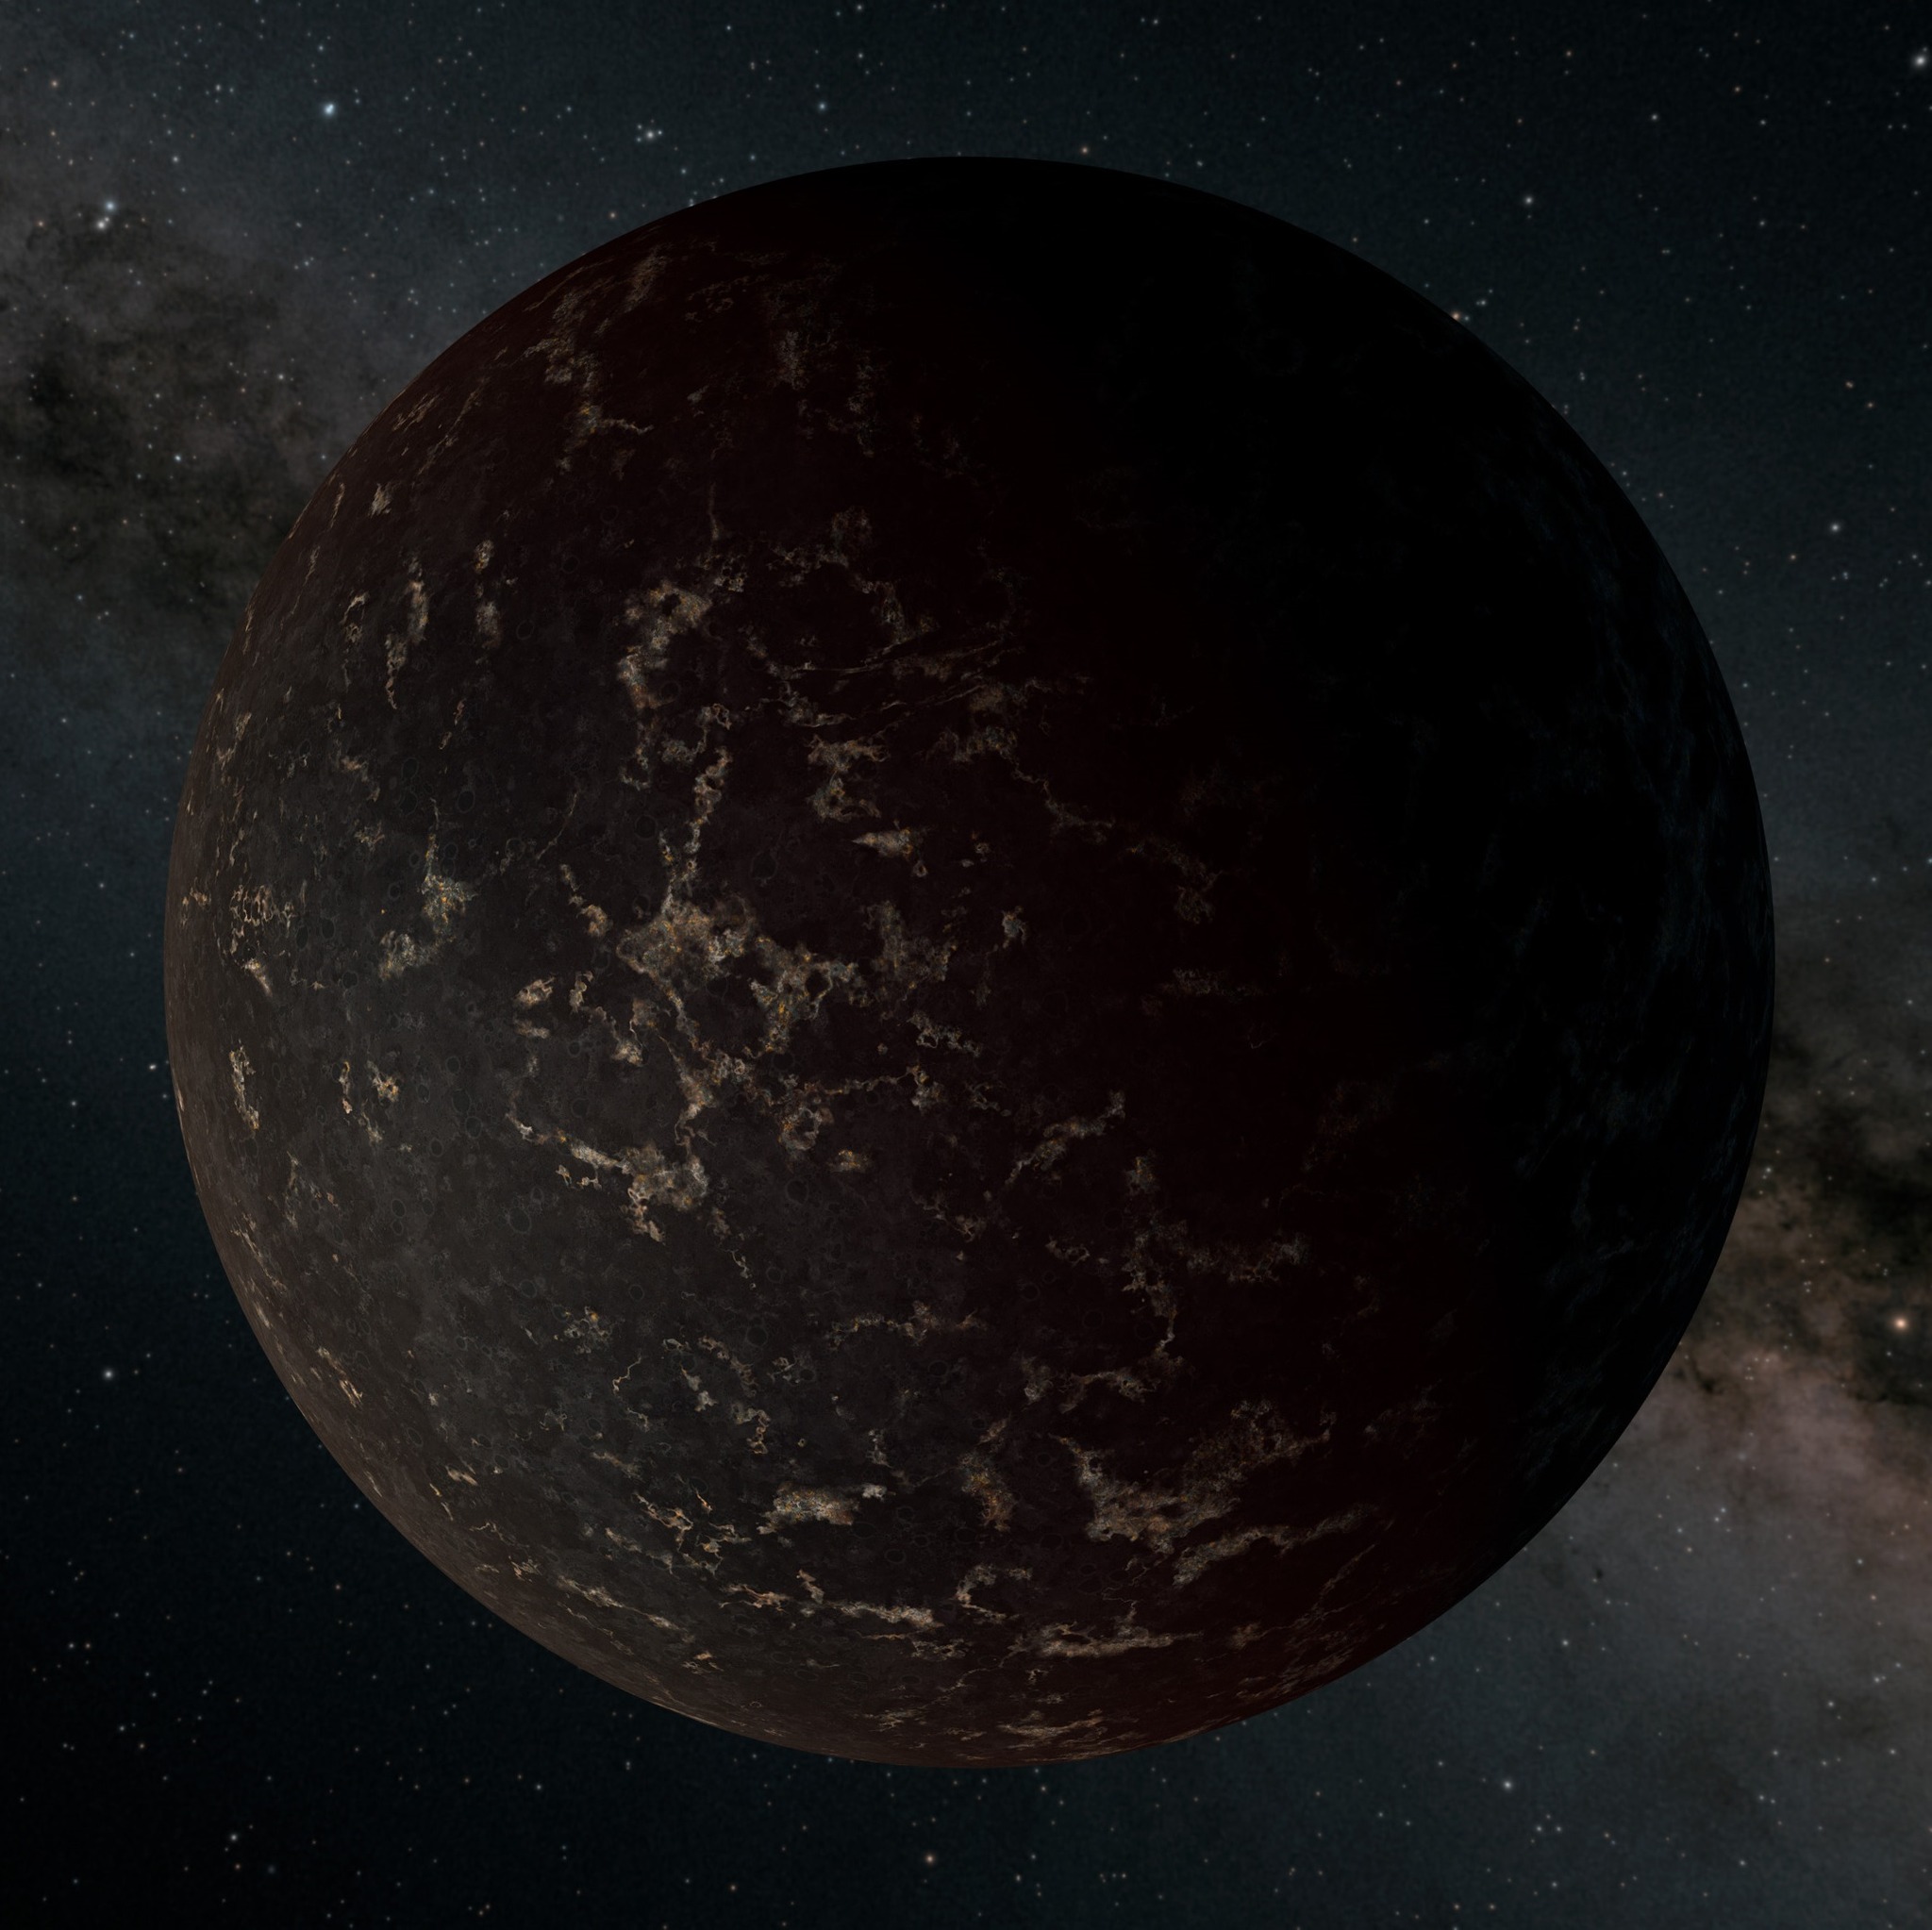 系外行星LHS 3844b的想像圖，它的質量是地球的約1.3倍，圍繞一顆 M型矮星運行。根據斯皮策太空望遠鏡的觀測，這顆行星沒有明顯的大氣層，其表面可能大部分被深色熔岩覆蓋。                                          圖片鳴謝: NASA/JPL-Caltech